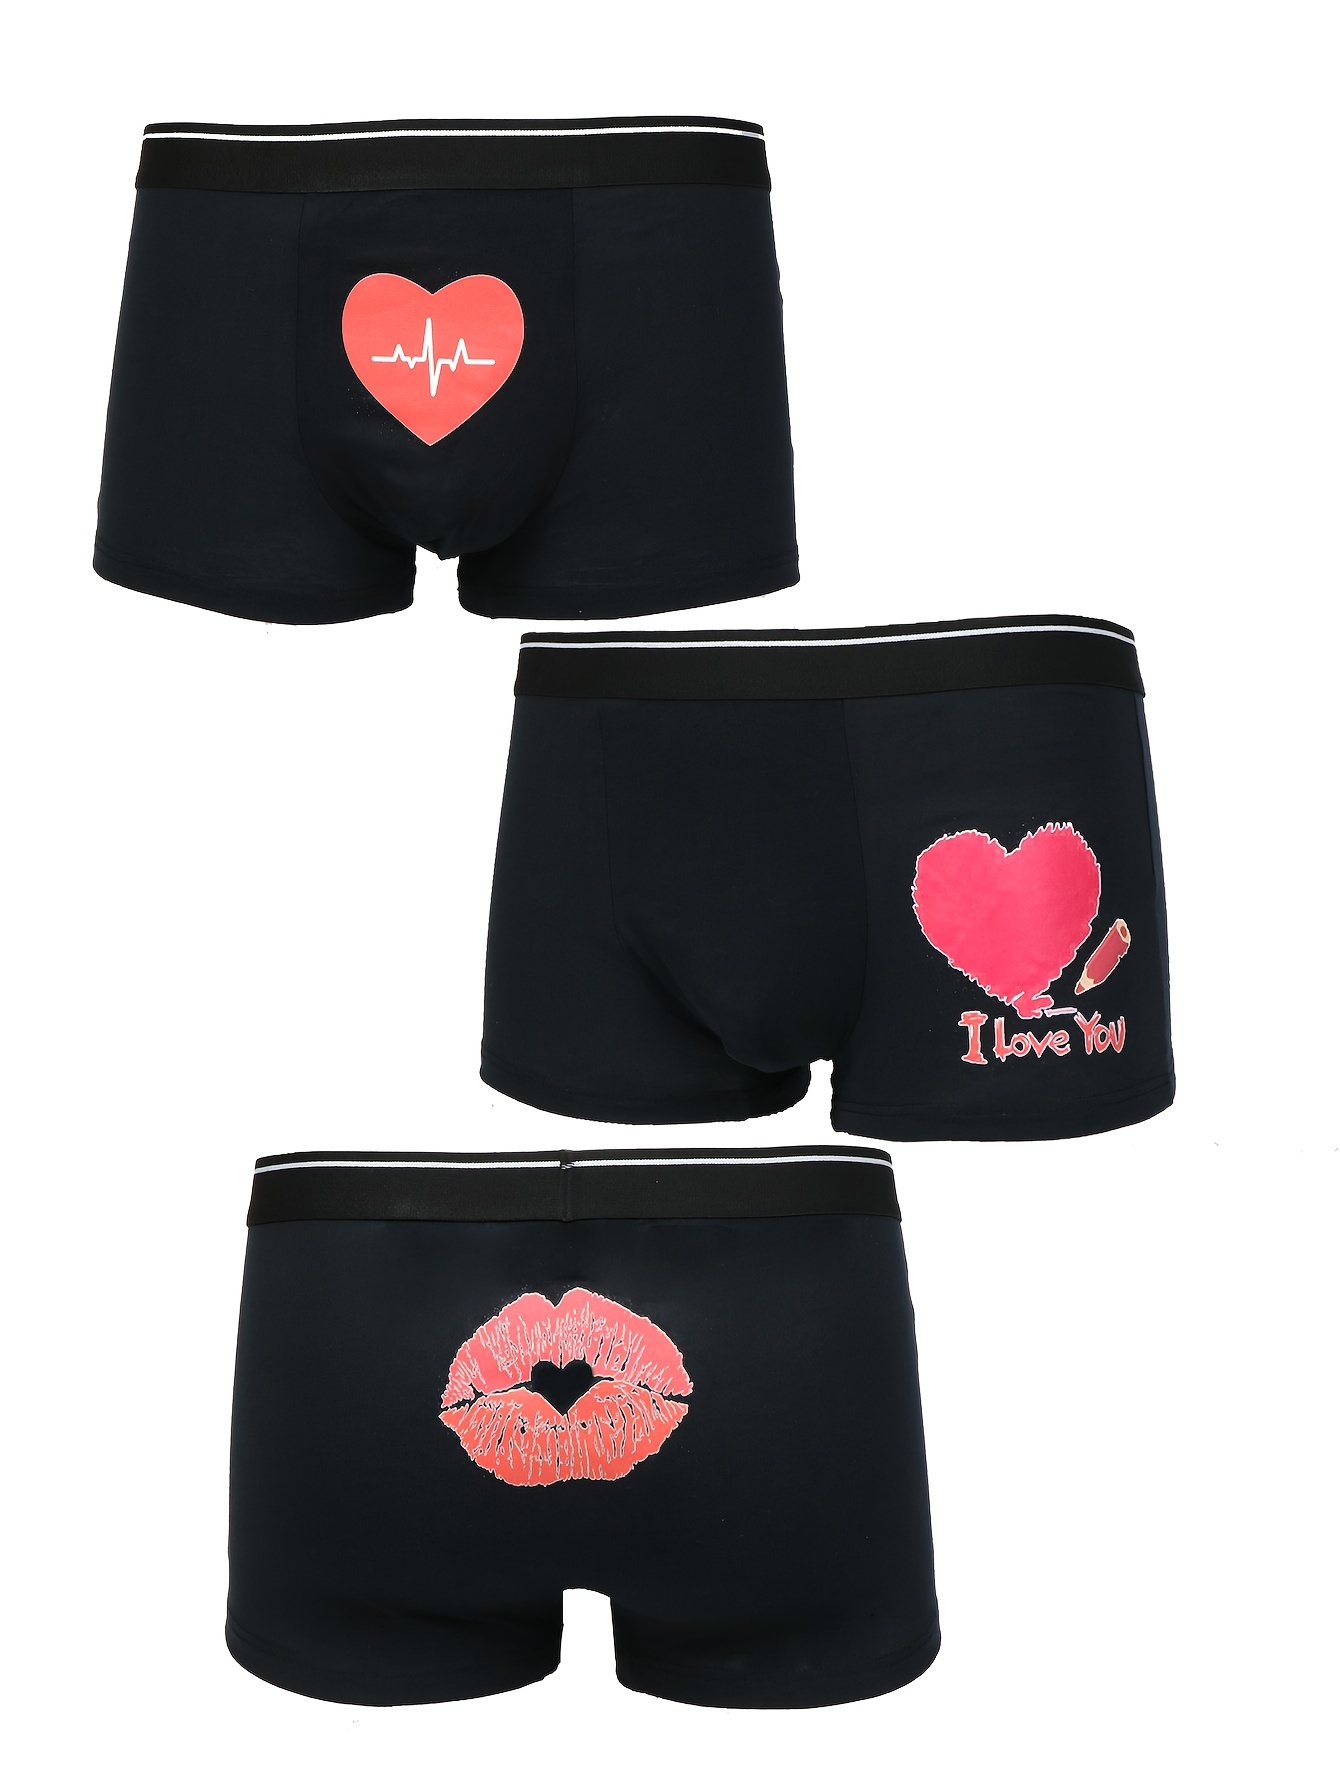 PMUYBHF Underwear Men Boxer Men's Valentine's Day Underwear Love Heart  Printed underpants Men's Thong Underwear Christmas